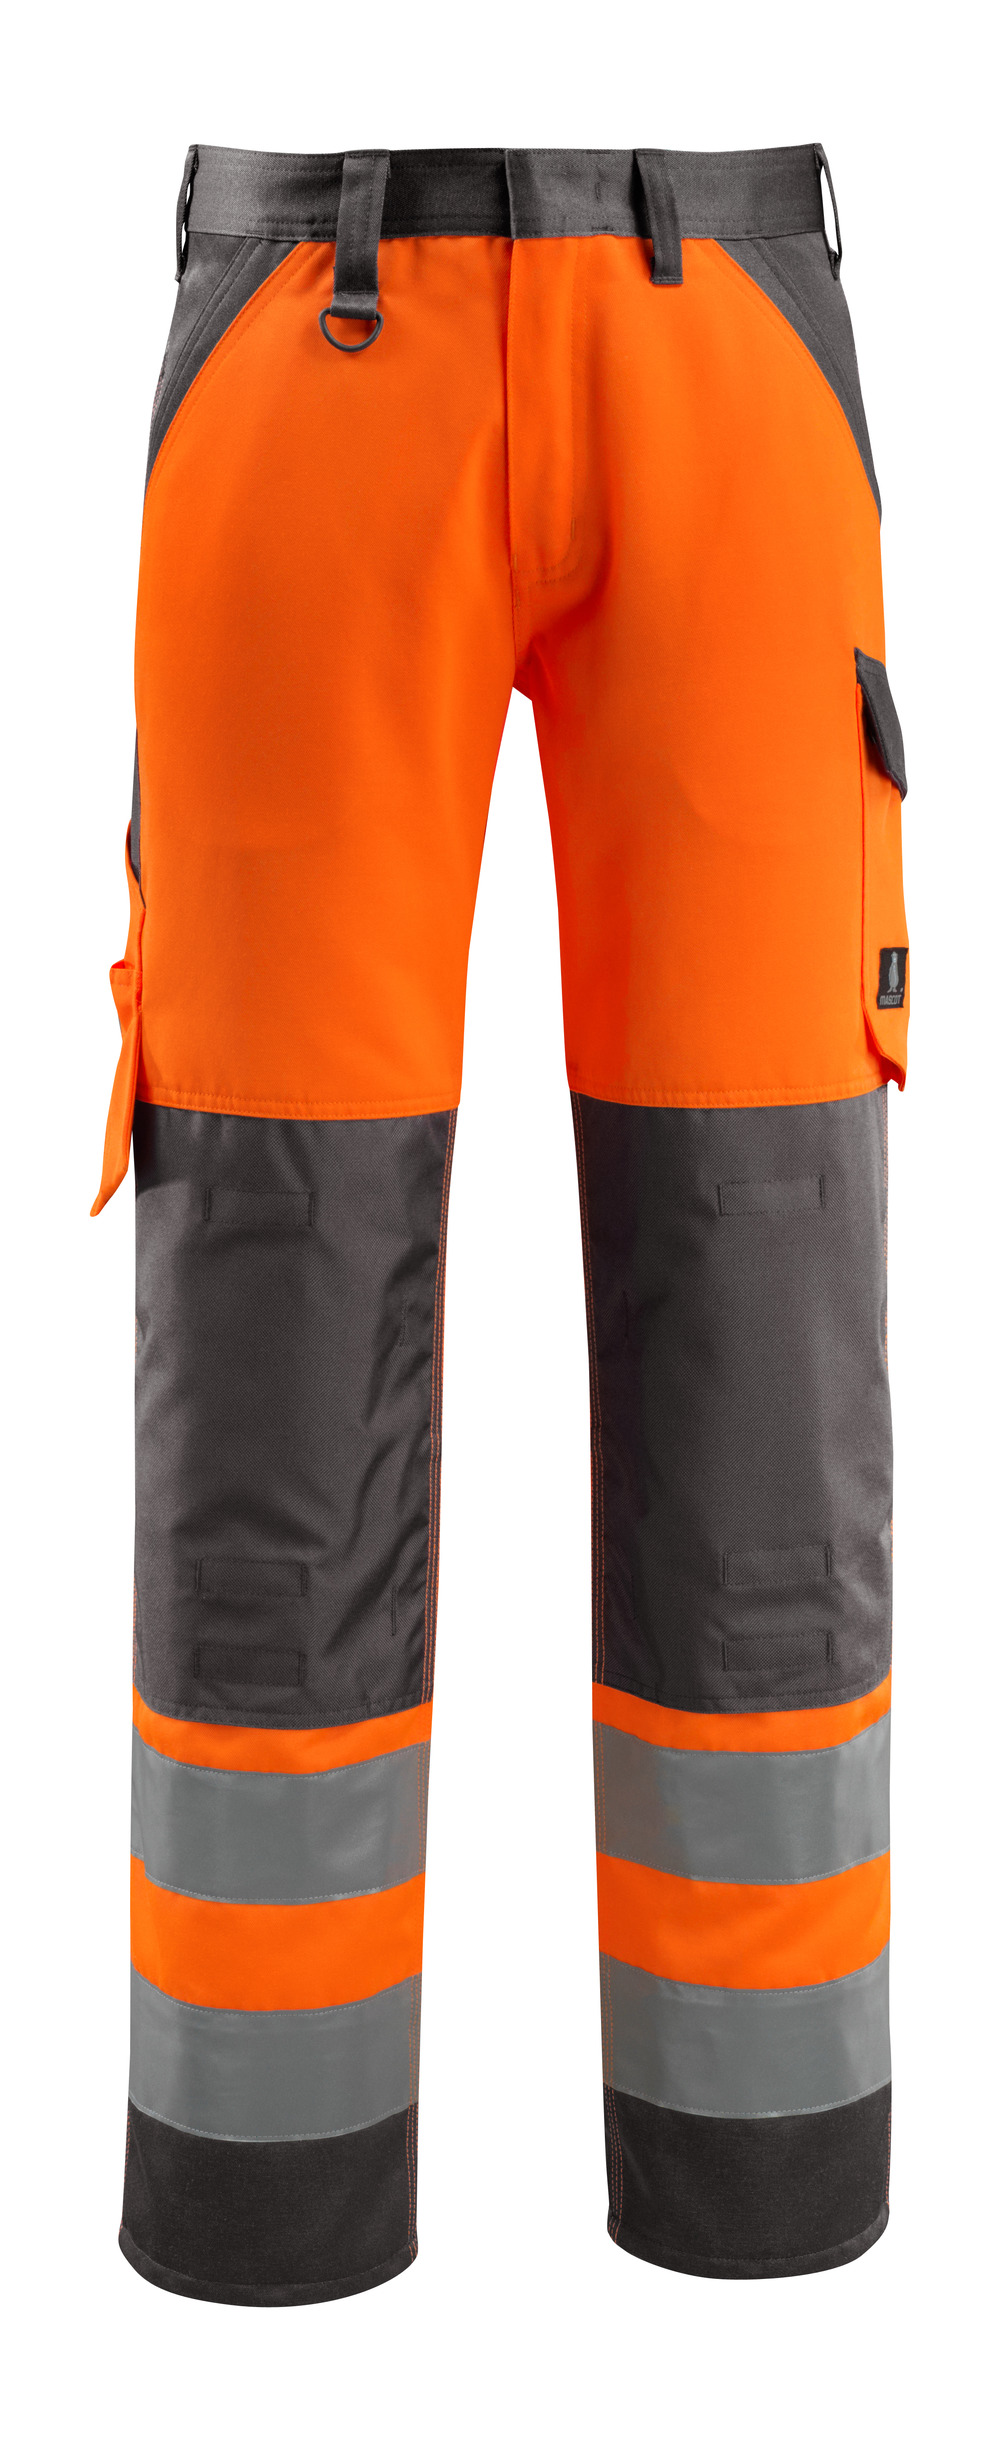 Stubbies Hi Vis Orange Work Pants Trousers K61074 Size 97r for sale online 